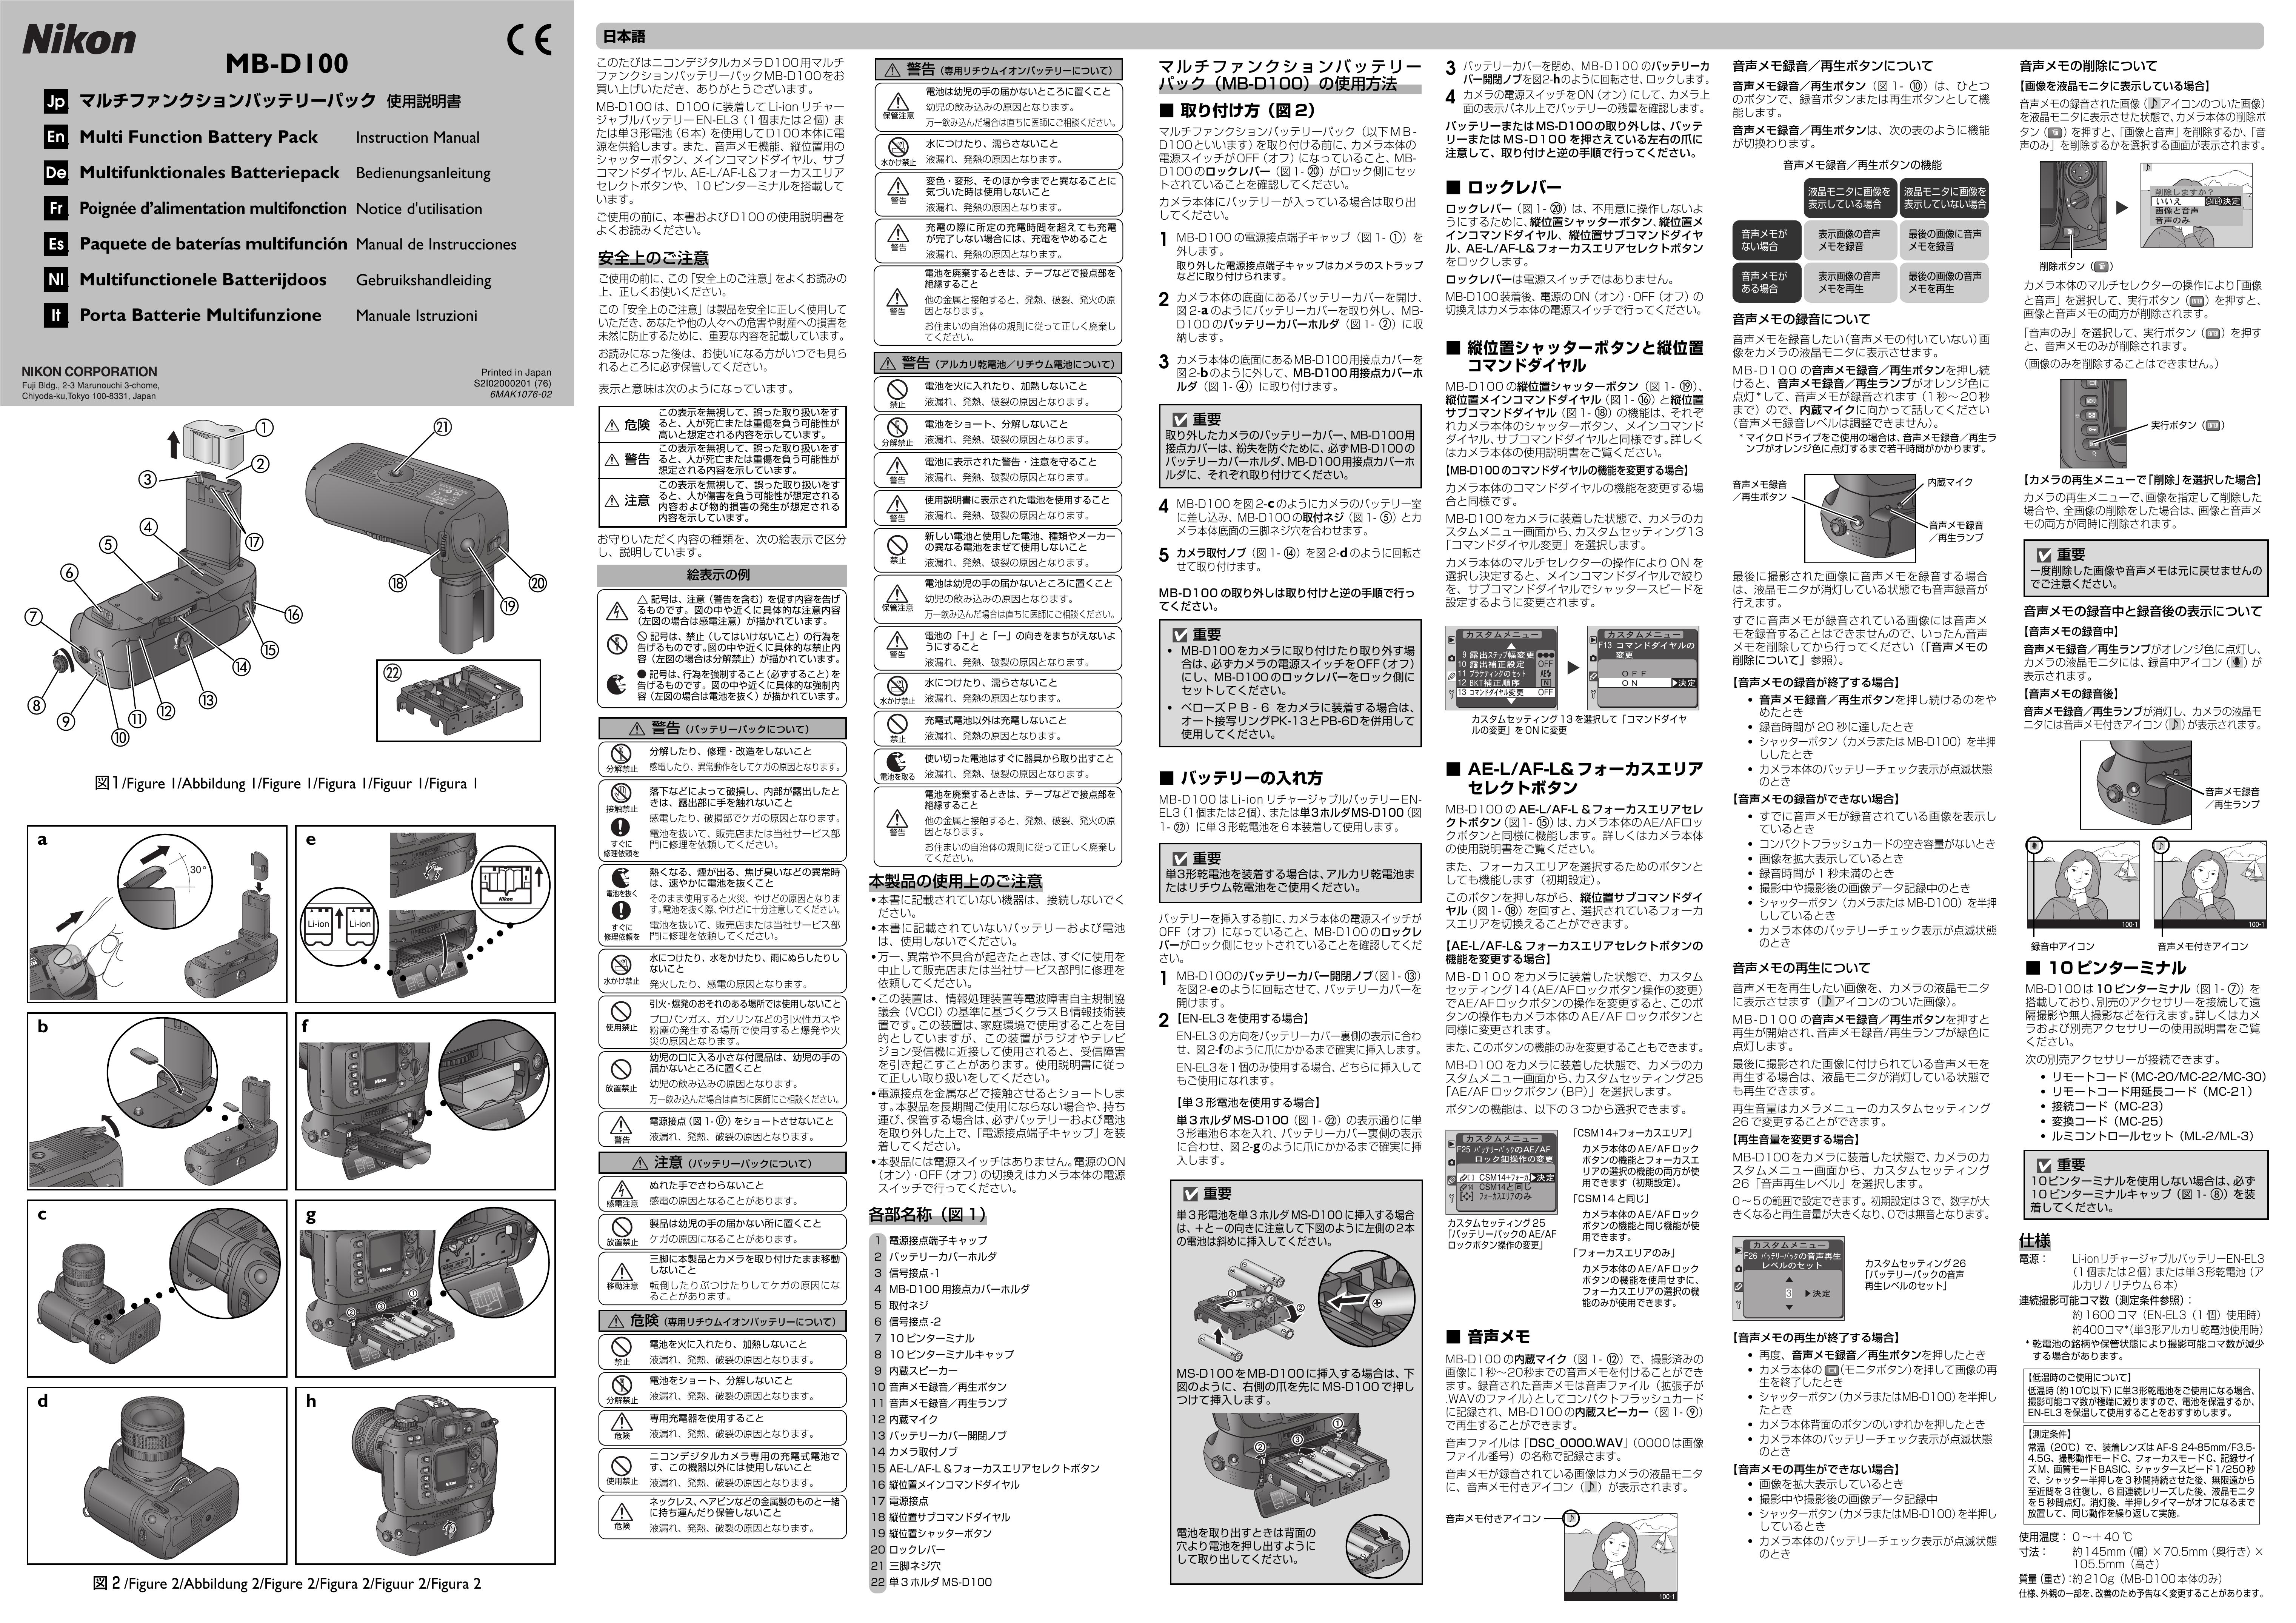 Nikon MB-D100 Camera Accessories User Manual